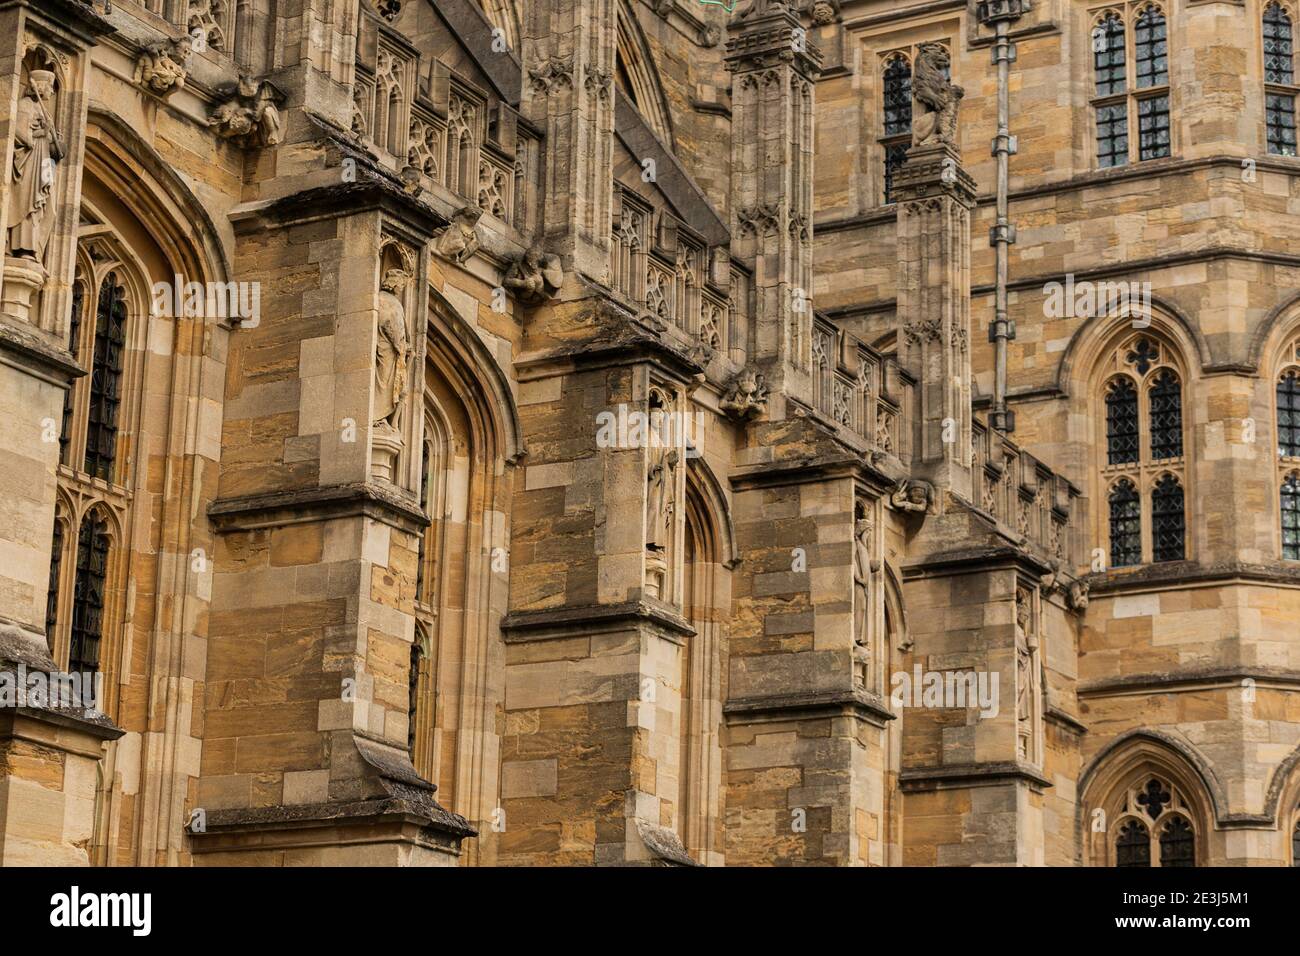 Détail de la façade extérieure de la chapelle Saint George à l'intérieur du château de Windsor, Berkshire, Angleterre, Royaume-Uni. Banque D'Images